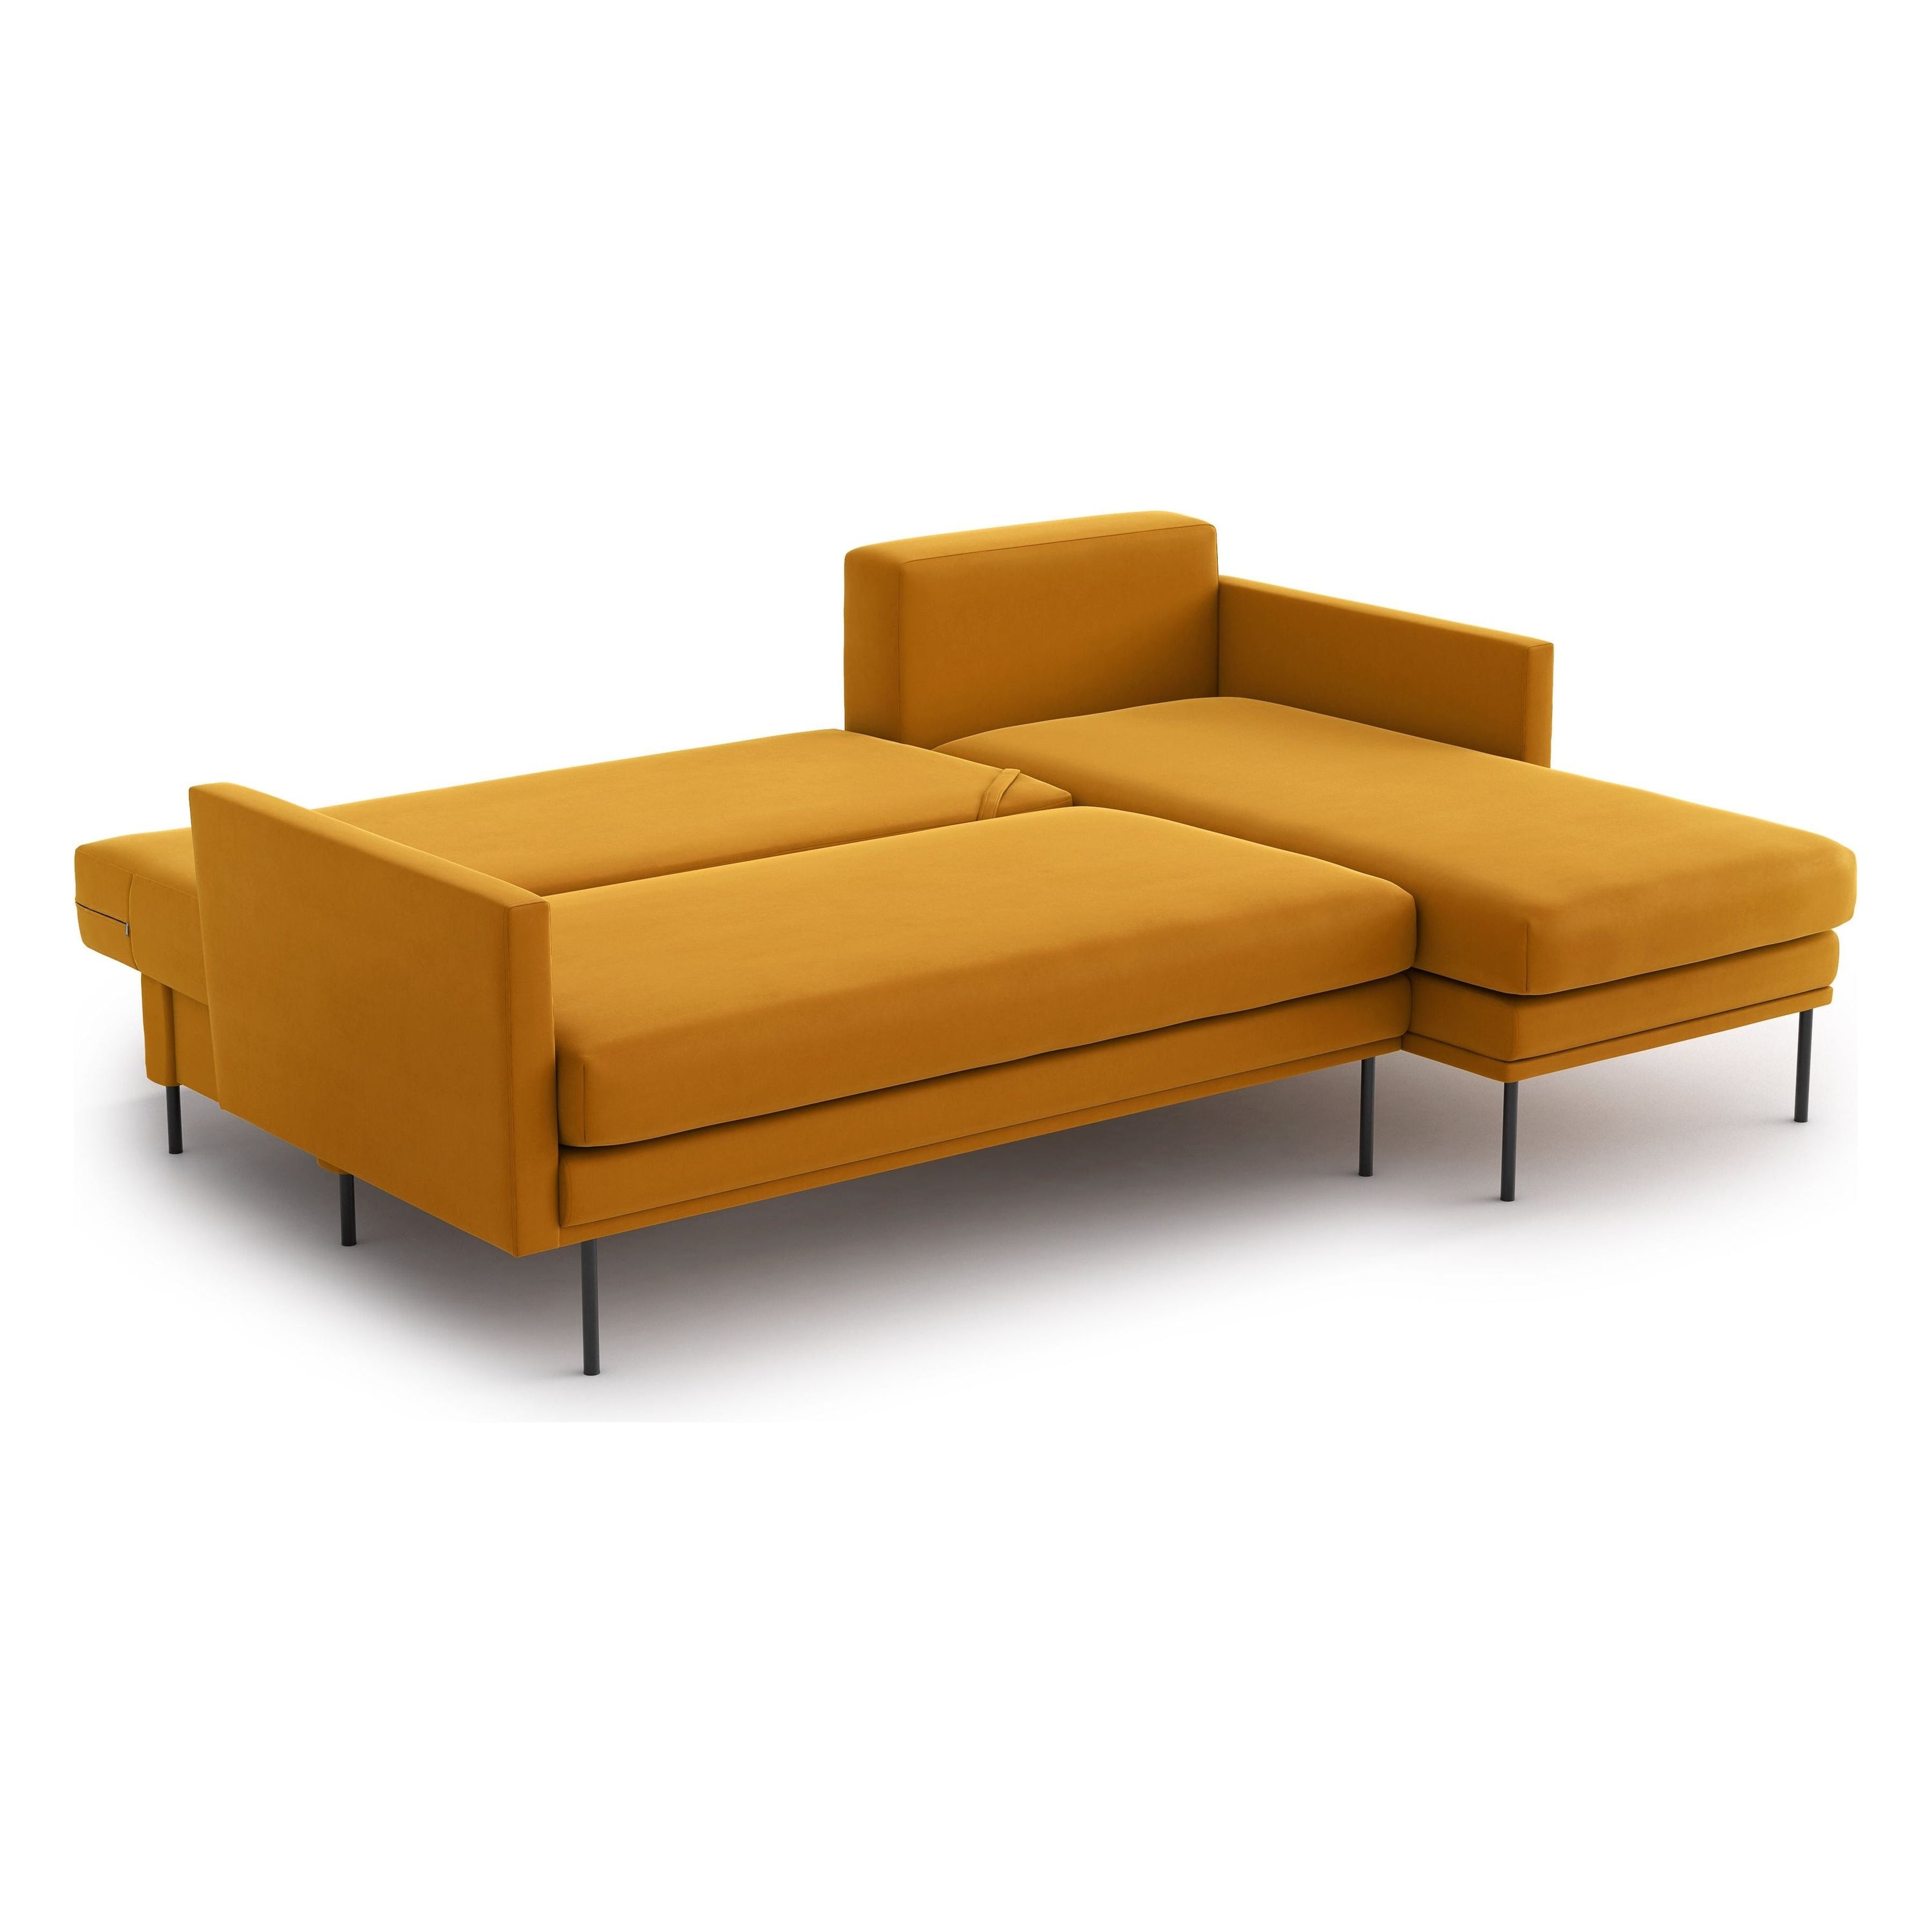 BLUES kampinė sofa lova, oranžinė spalva, universali kampo pusė